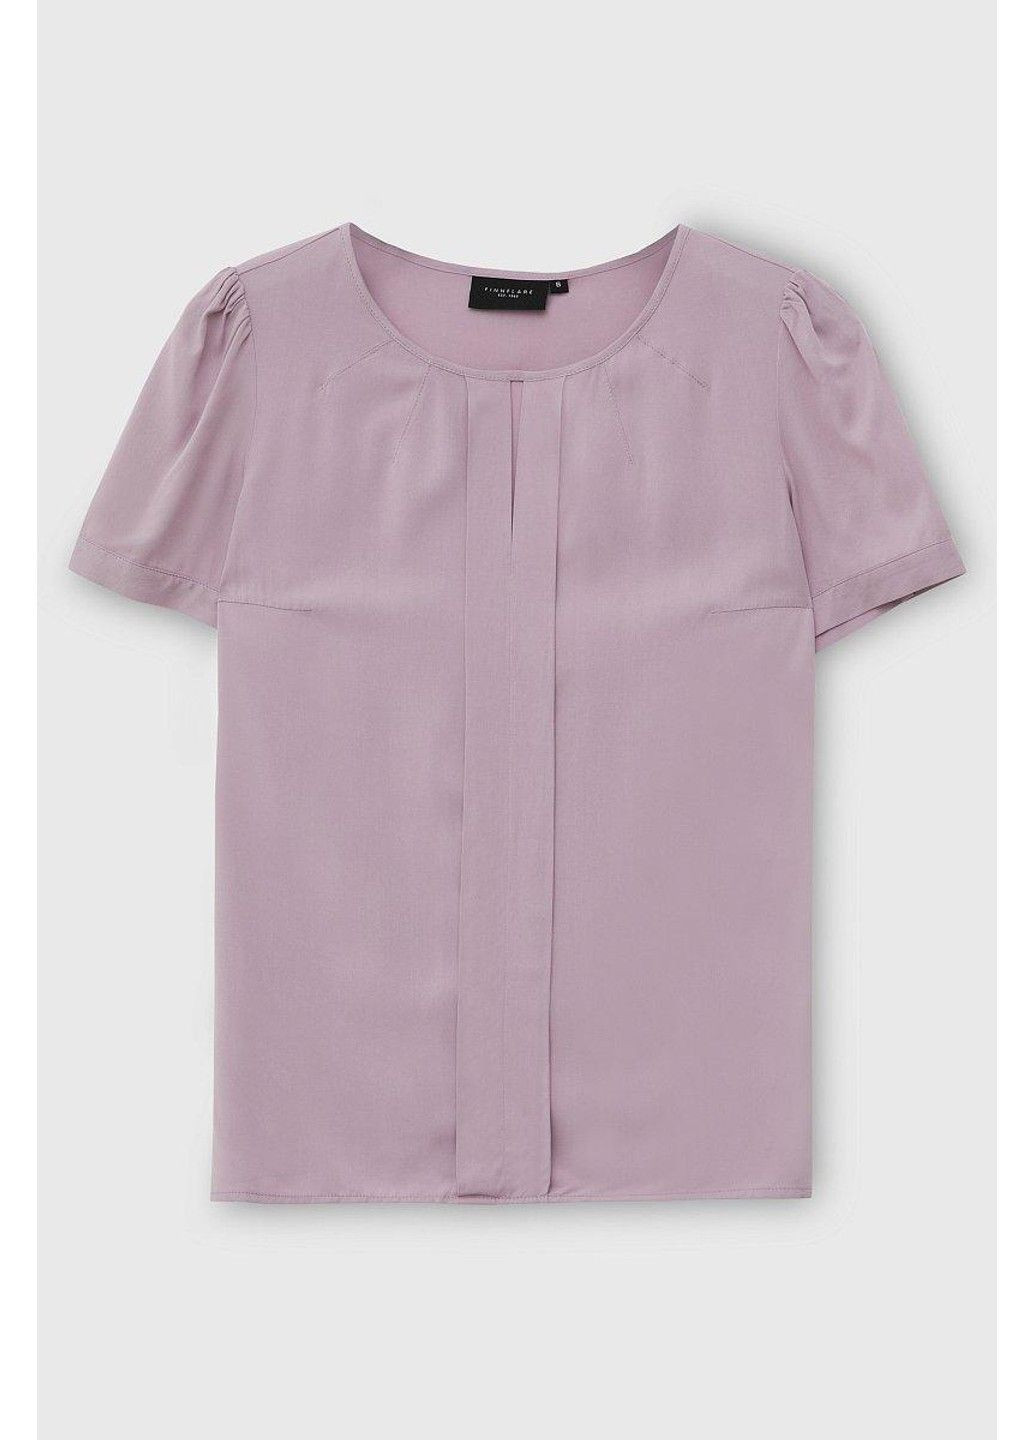 Розовая летняя блузка bas-10022-808 Finn Flare